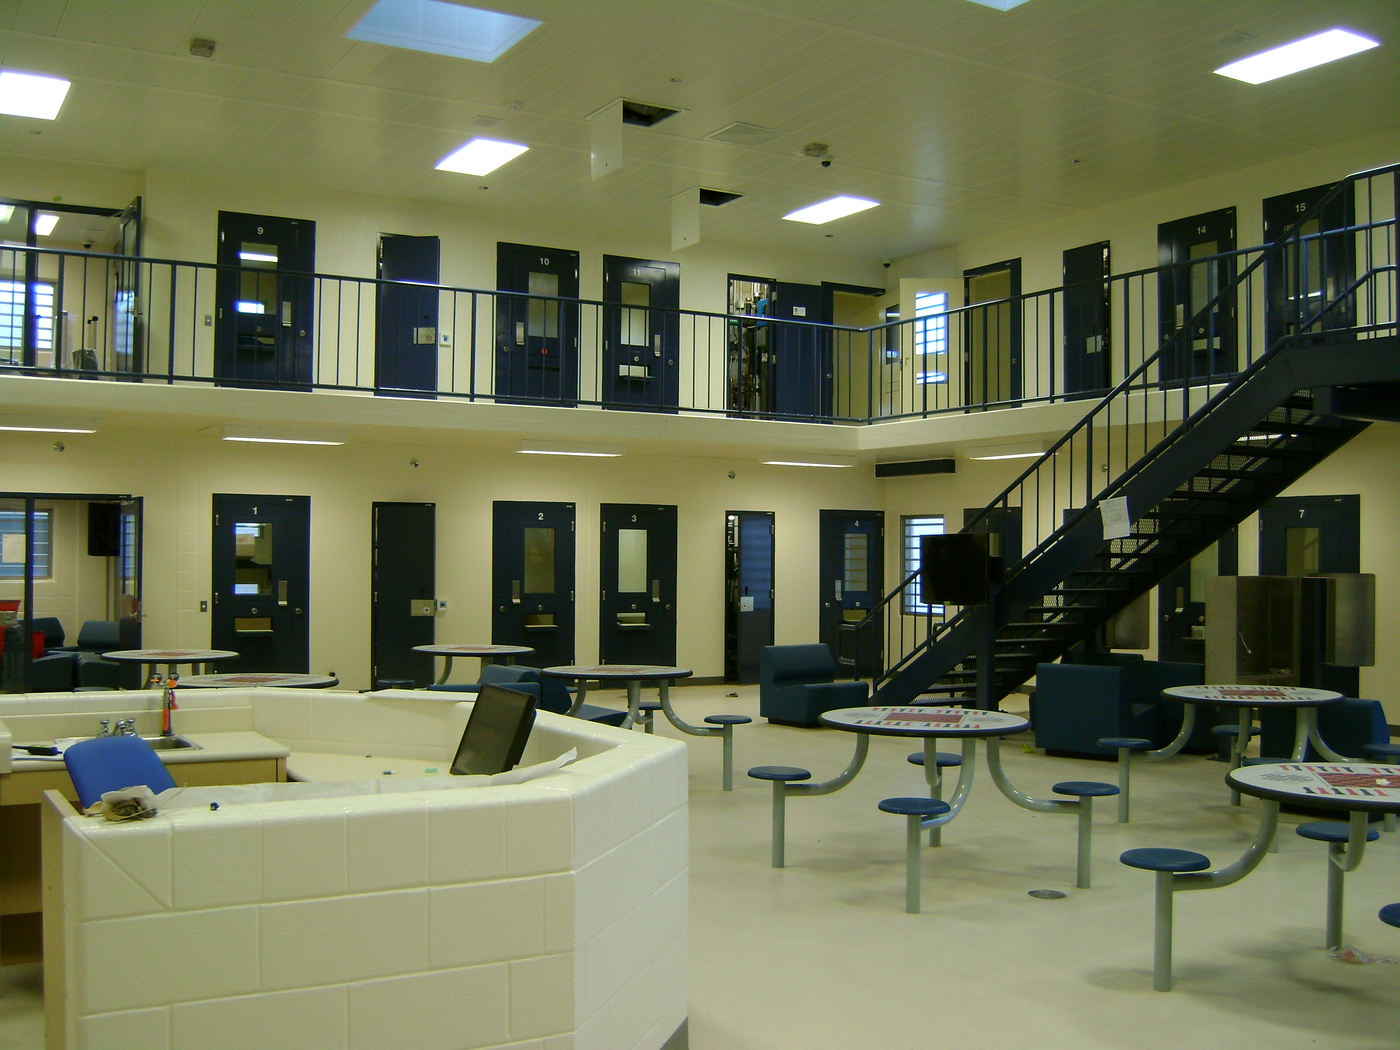 btc detention center